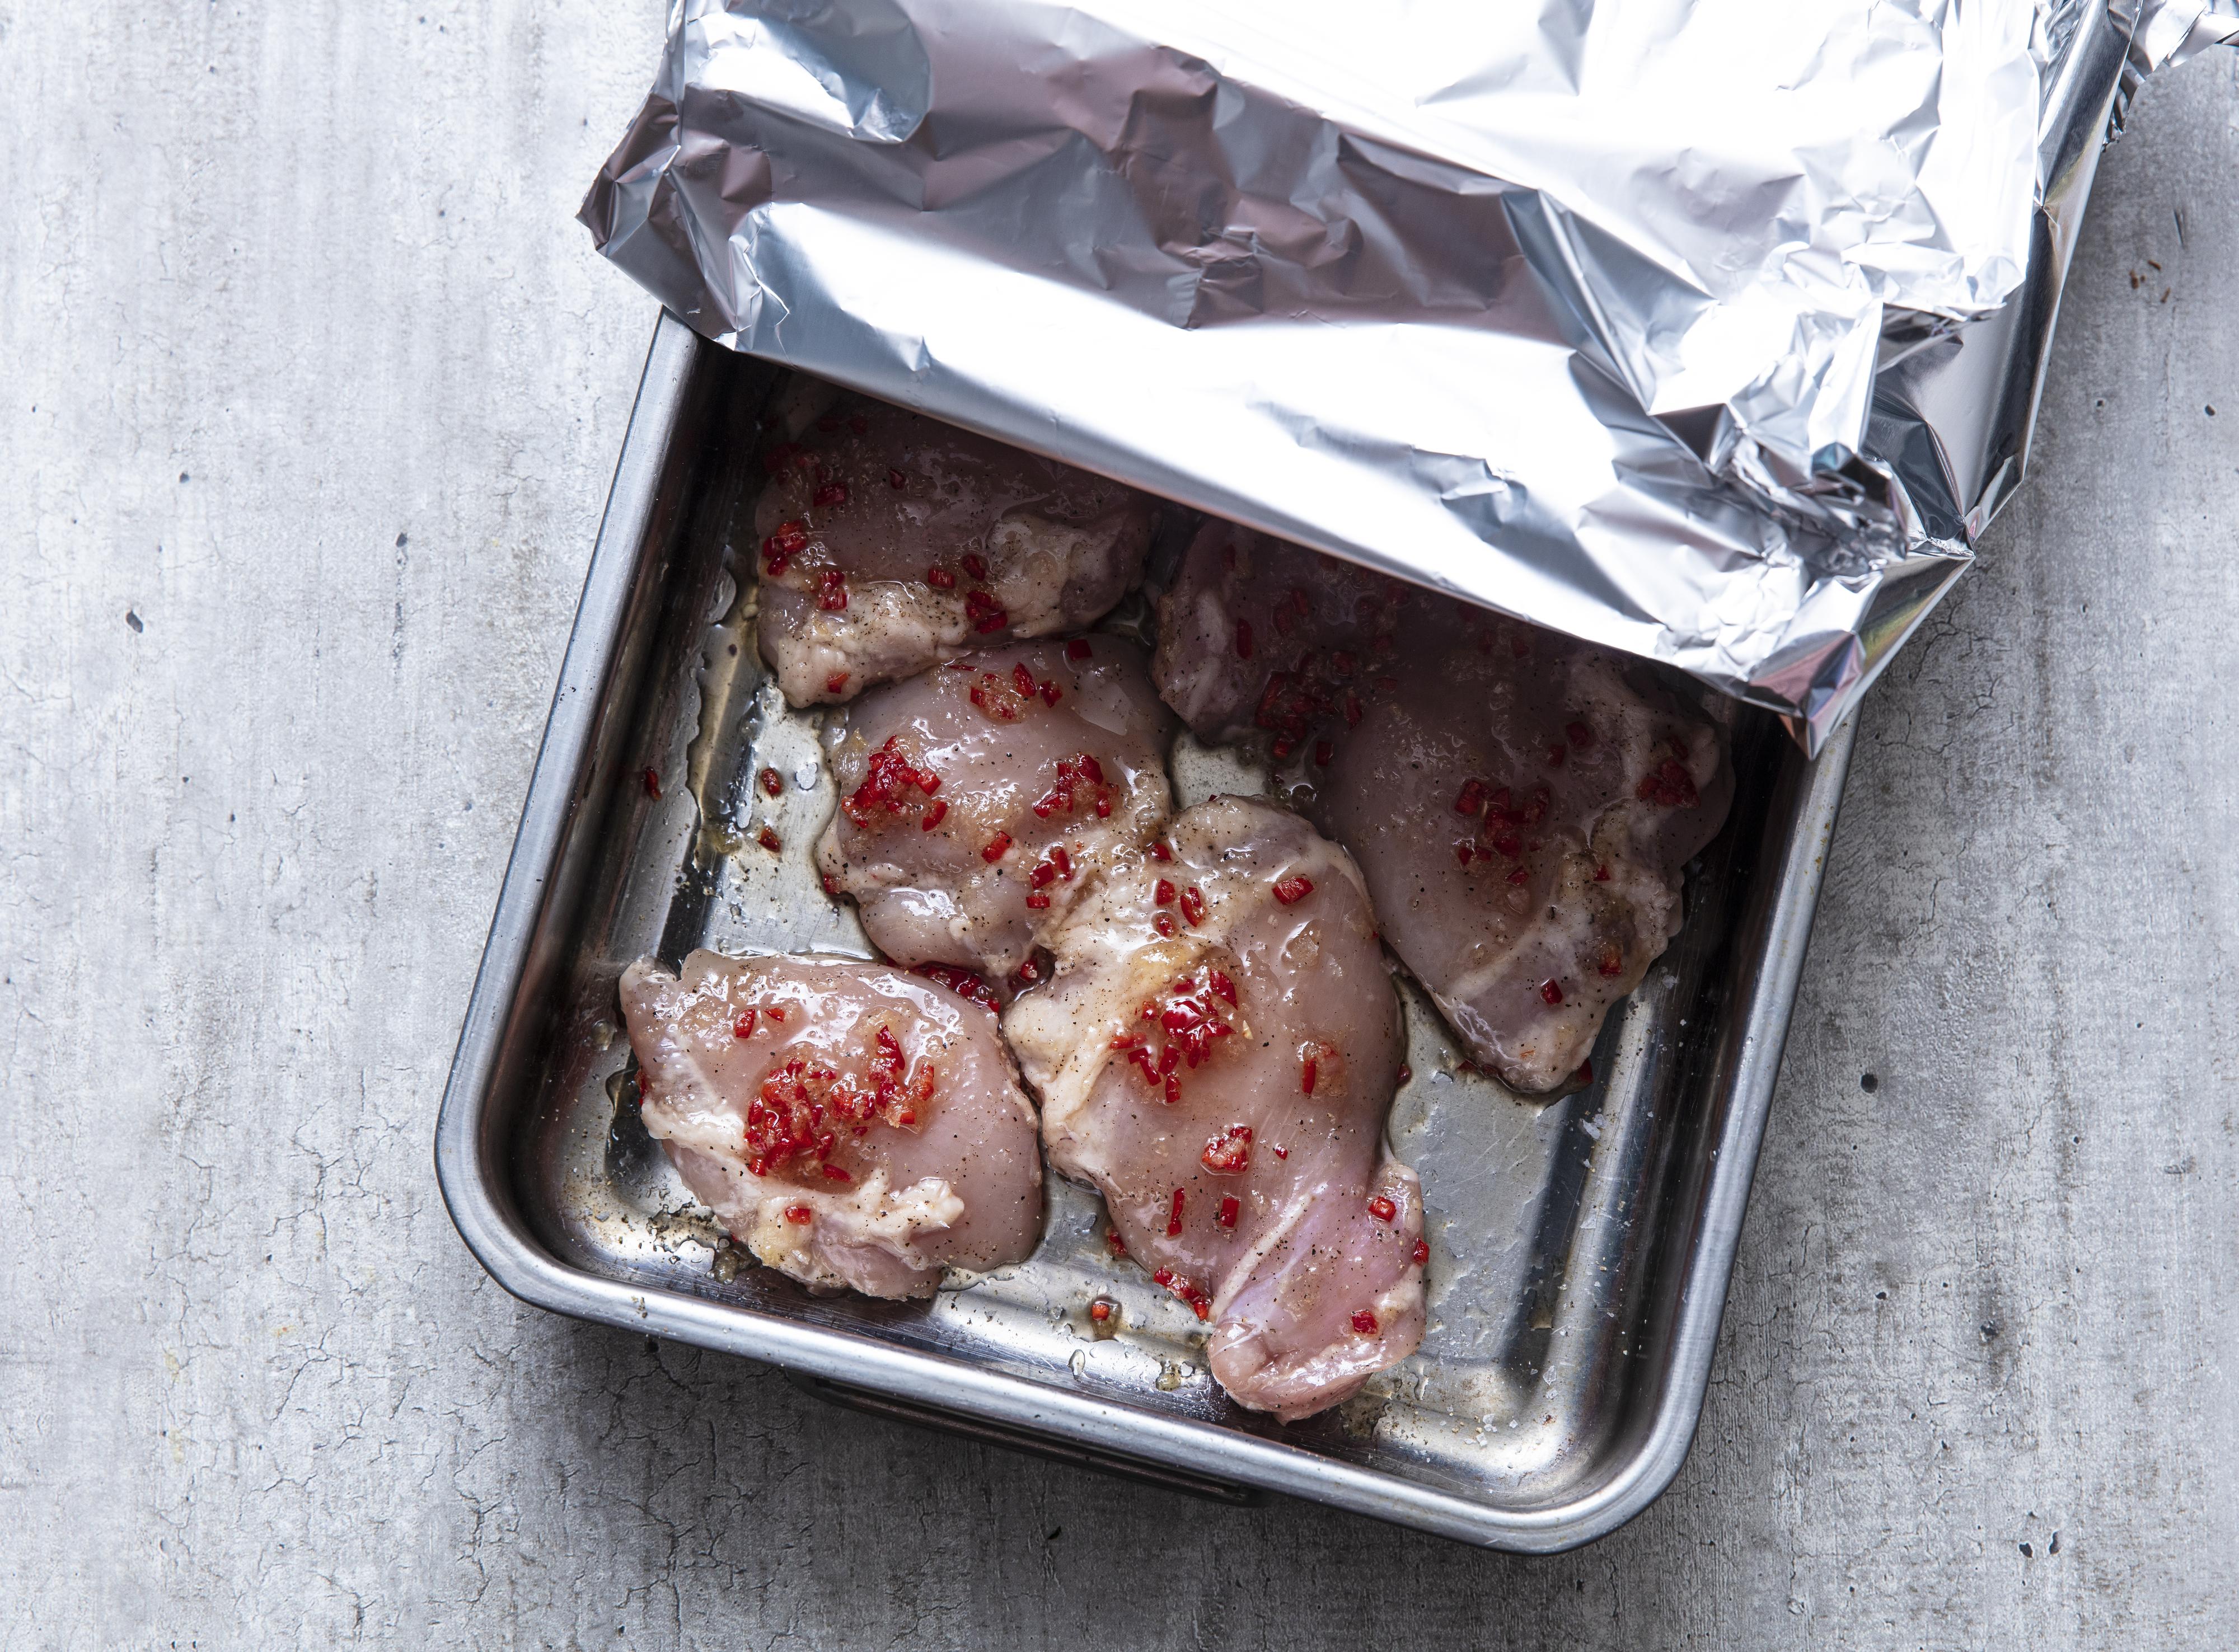 Legg kyllingstykkene i en passende ildfast form. Dekk formen med aluminiumsfolie og bak kyllingen i ovn i 20 -25 minutter, eller til kyllingen gjennomstekt. 